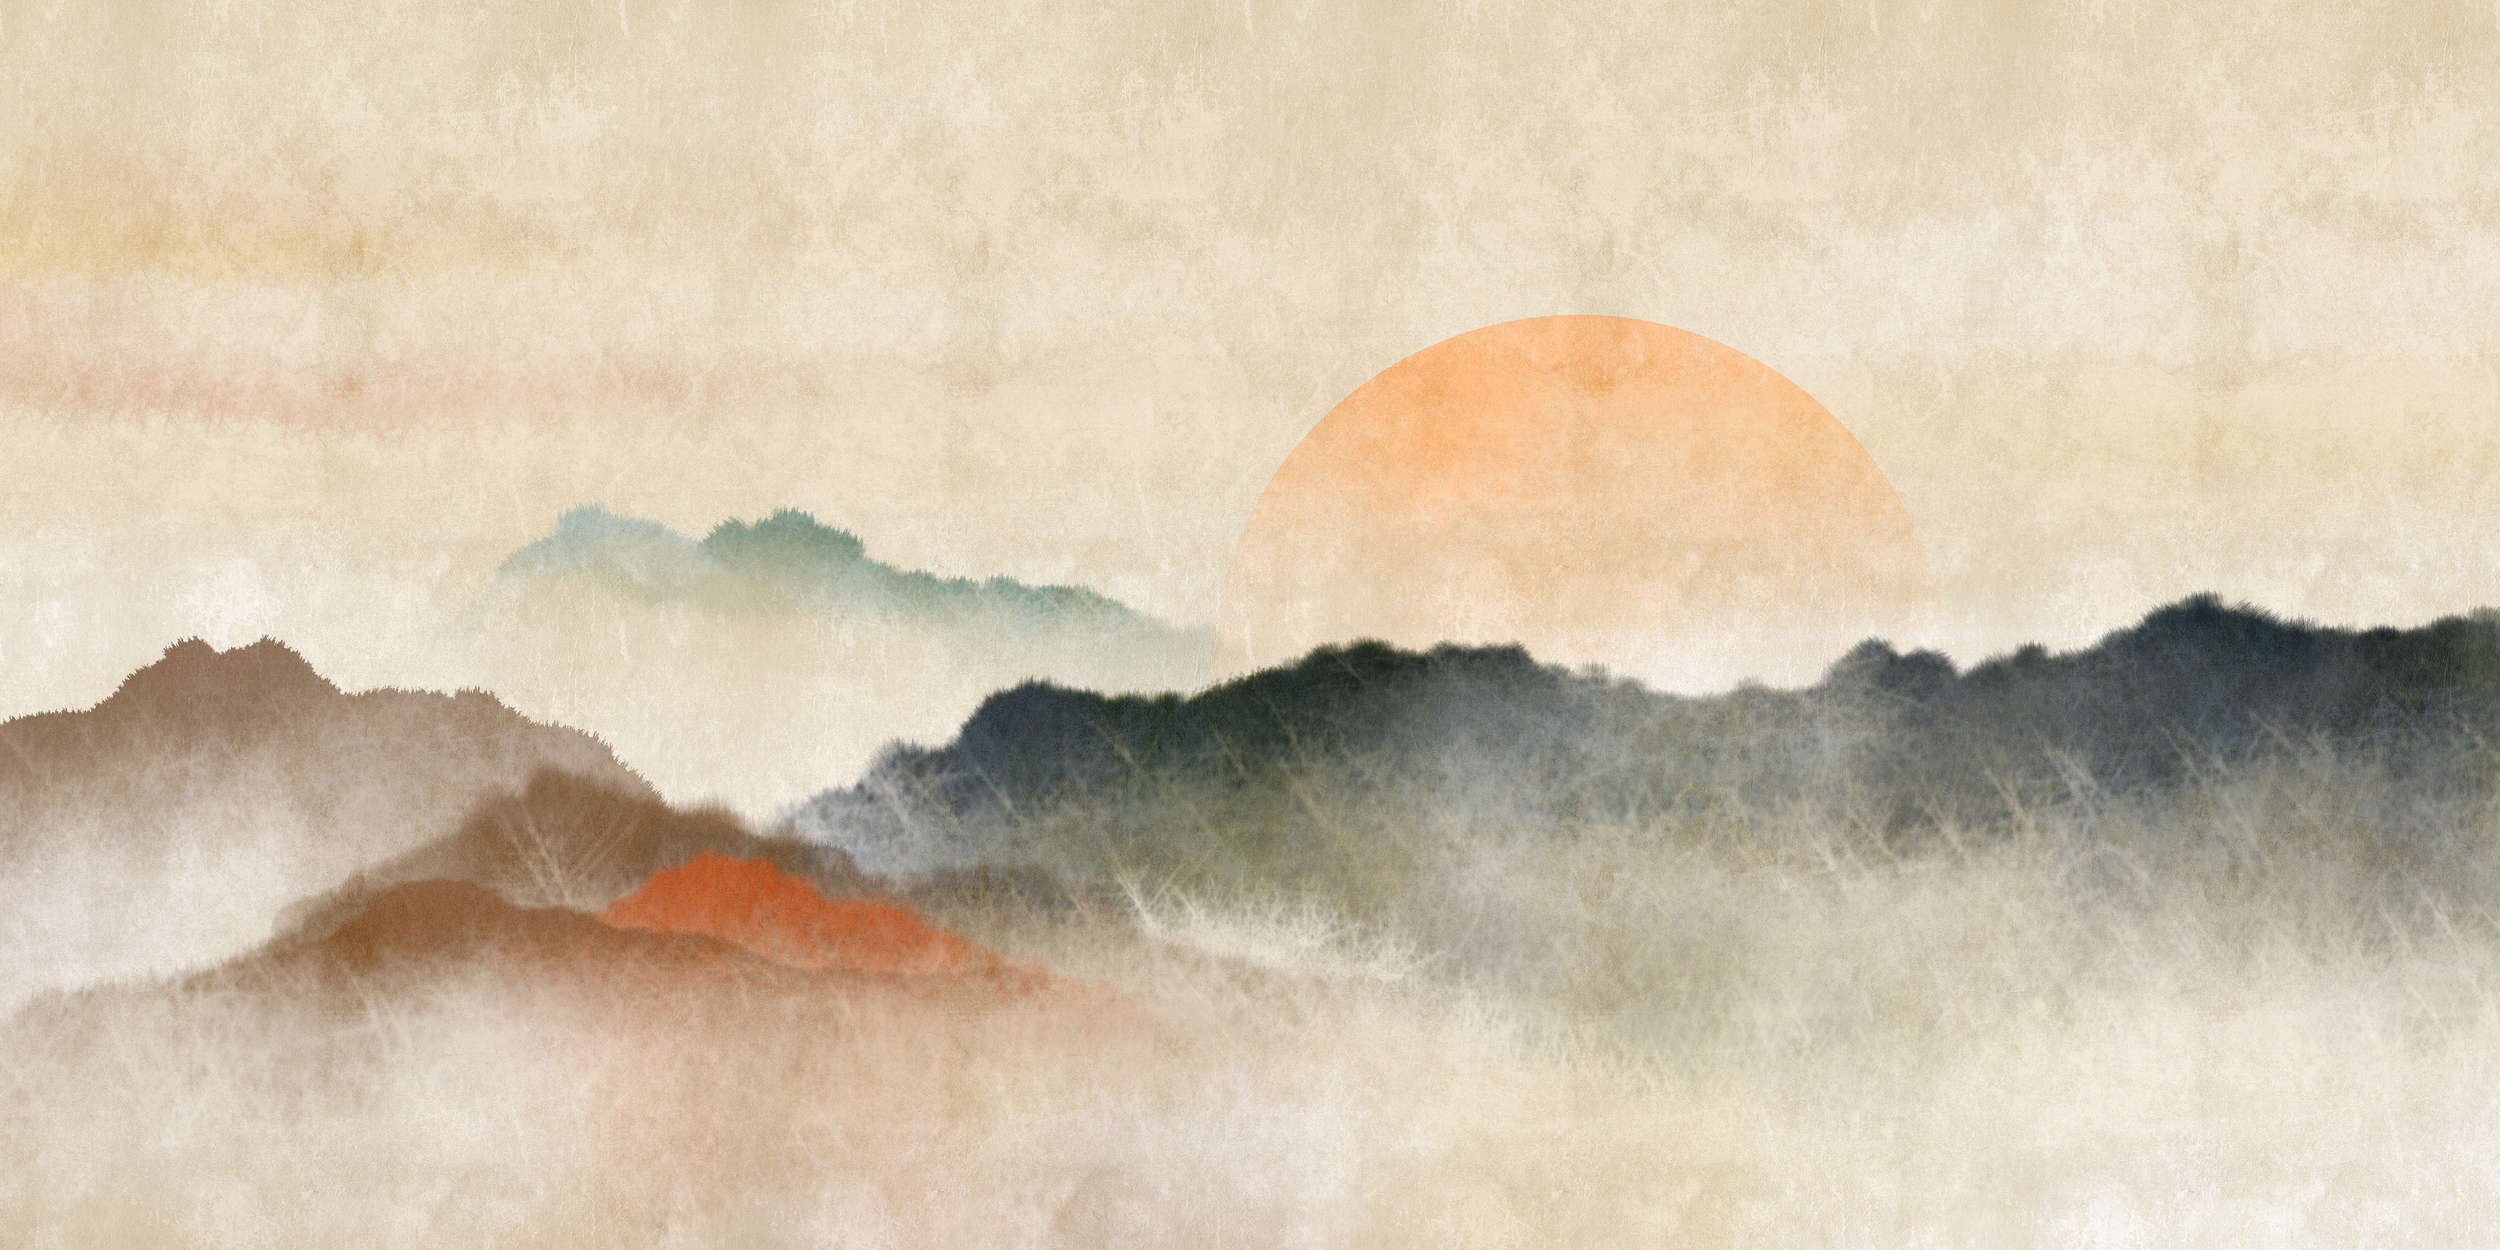             Akaishi 3 - Papel Pintado Amanecer, Impresión Artística Estilo Asia
        